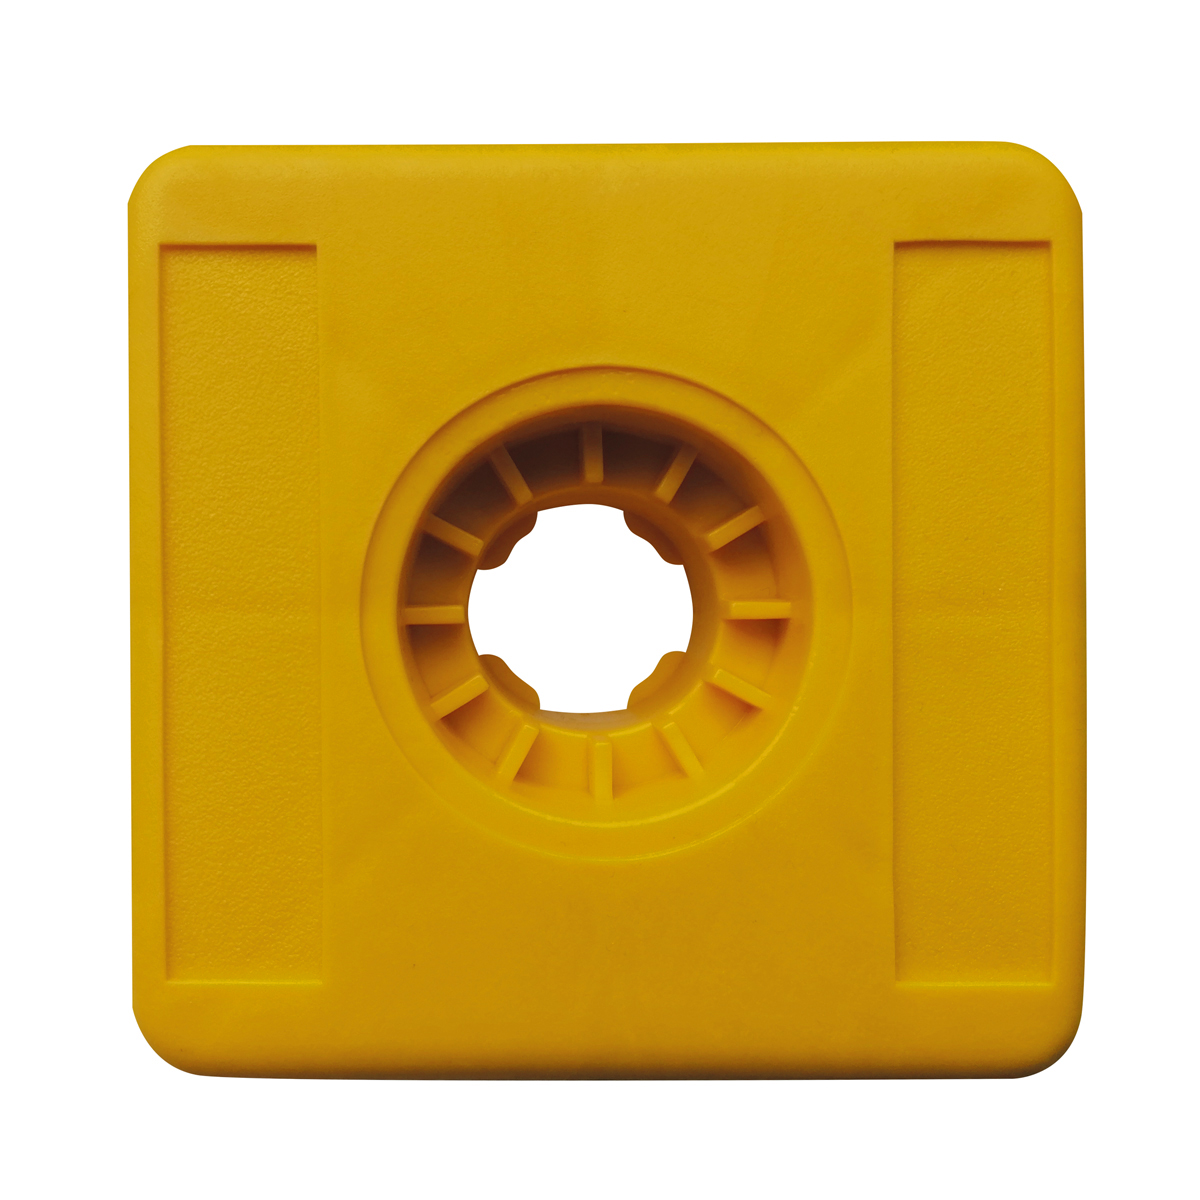 Kunststoffmarken Vario Light, gelb Kopfgröße 100x100x20 mm ohne Aufschrift